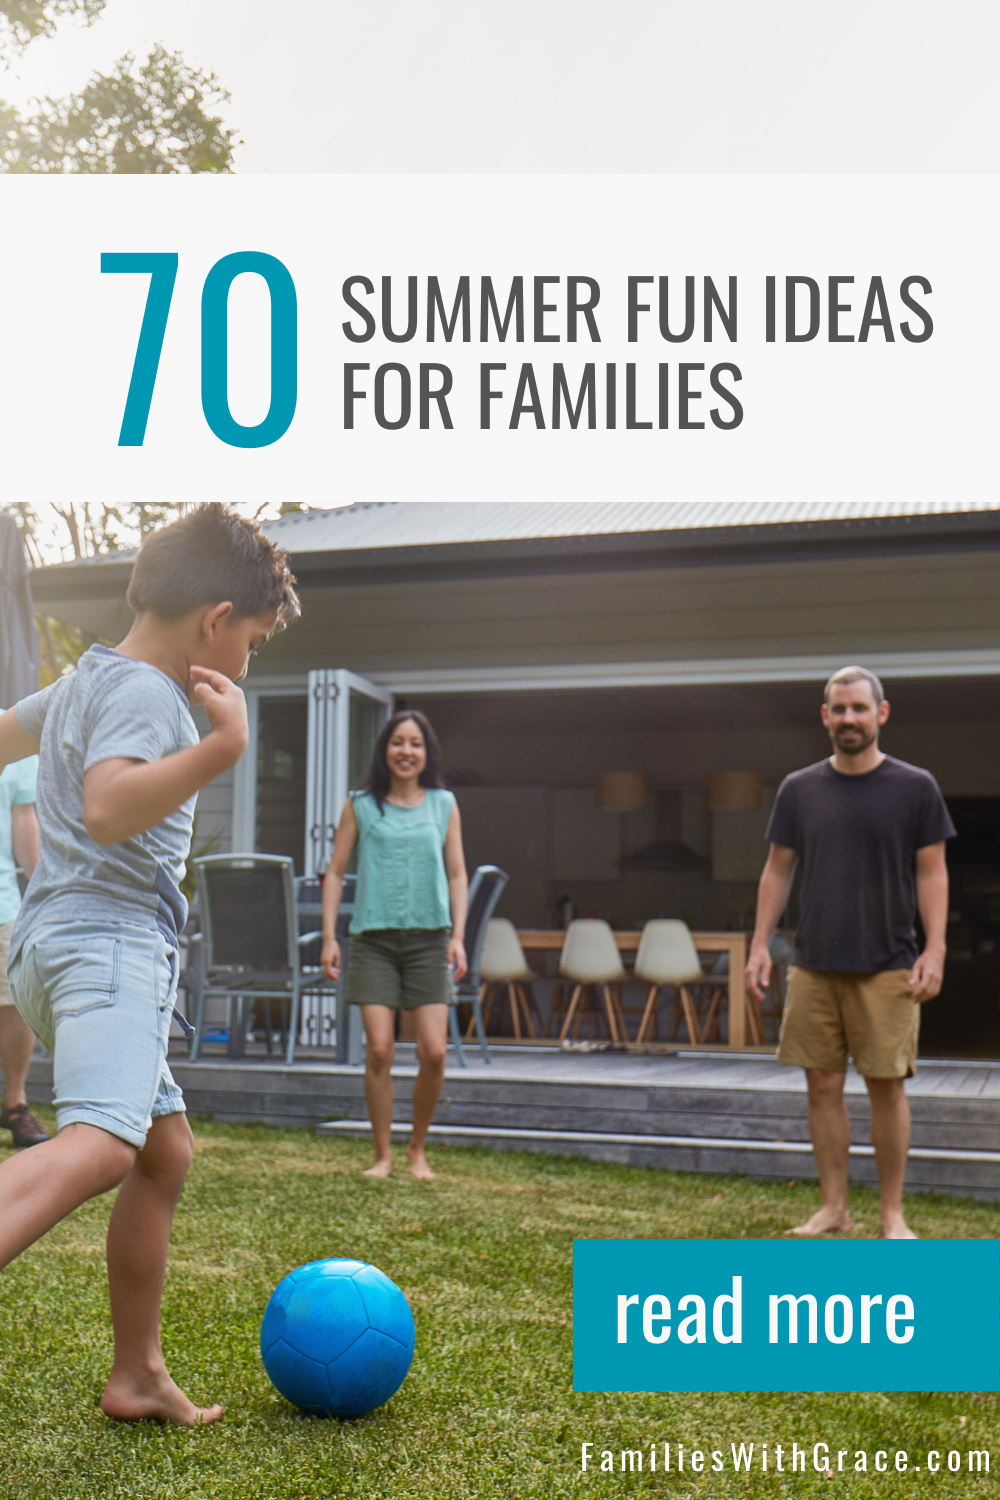 Summer fun ideas for families